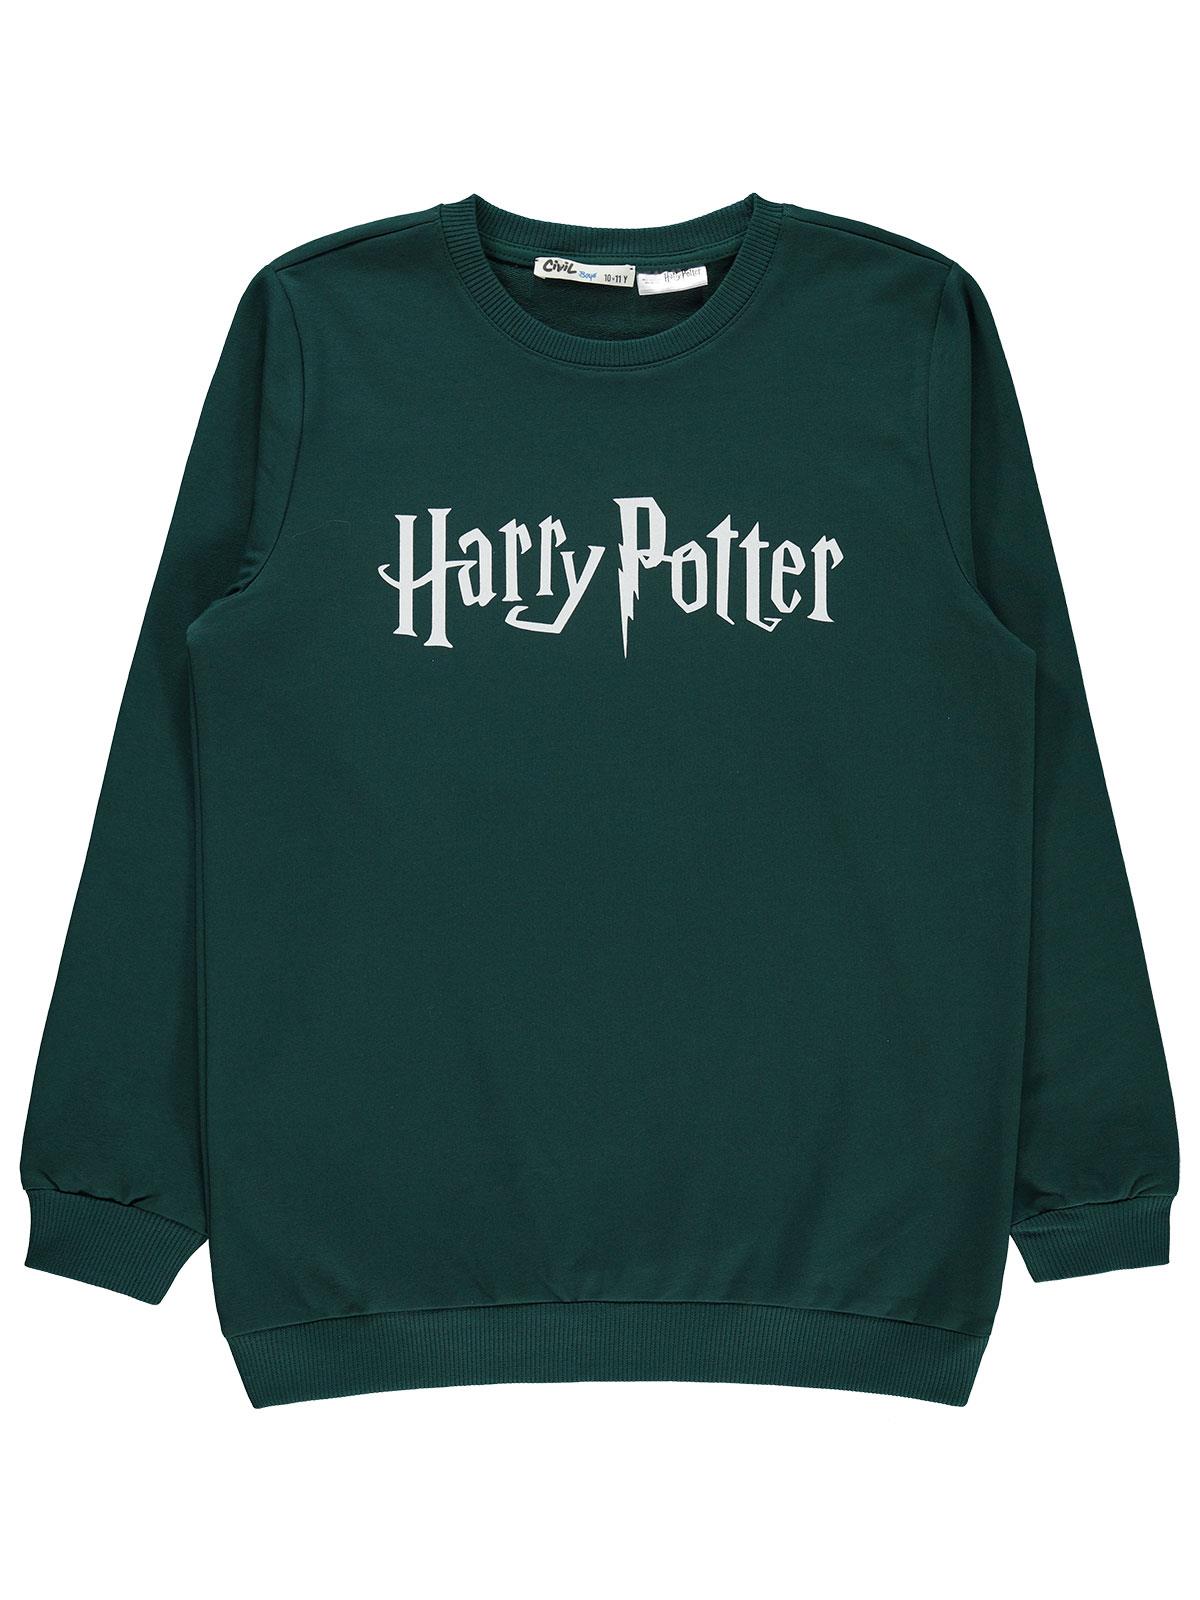 Harry Potter Erkek Çocuk Sweatshirt 10-13 Yaş Yeşil